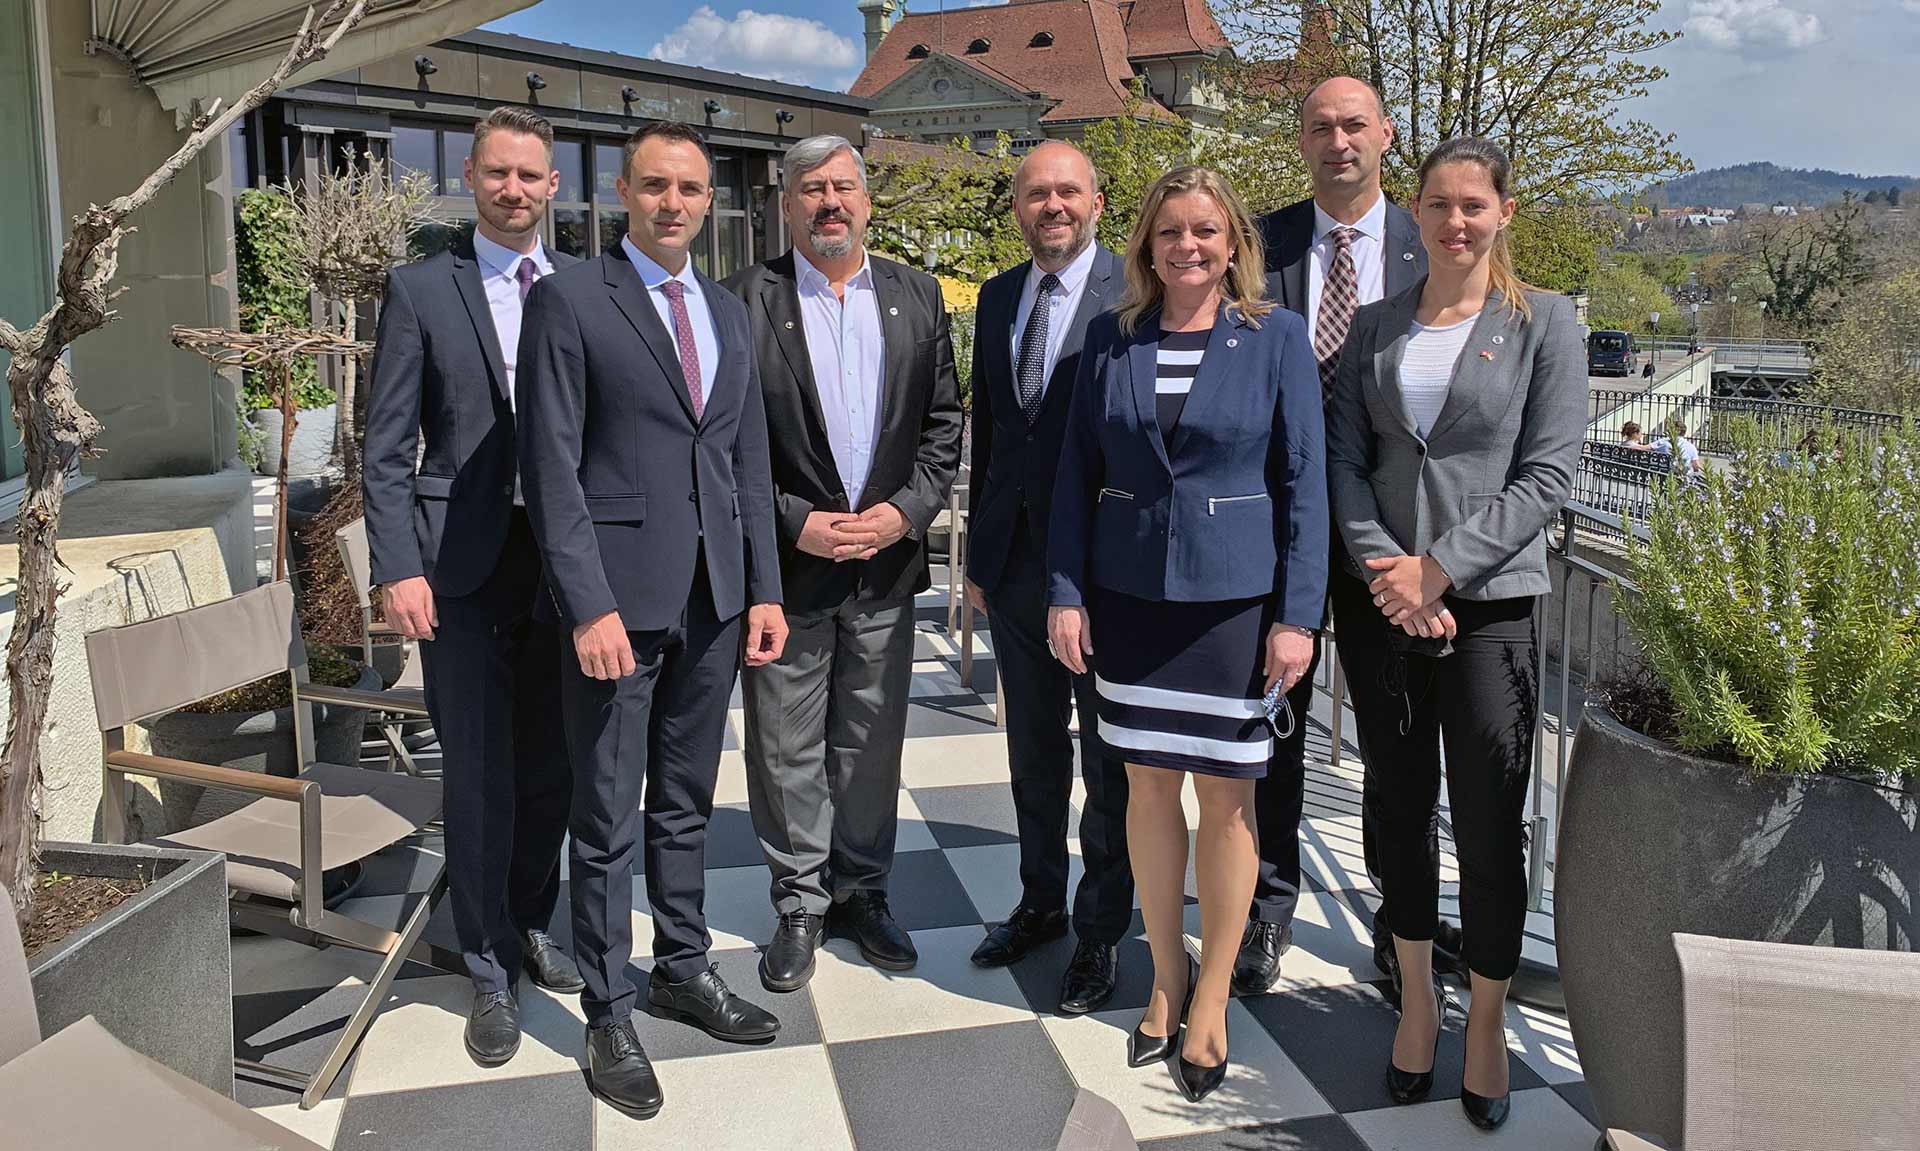 Rector's delegation visit in Bern